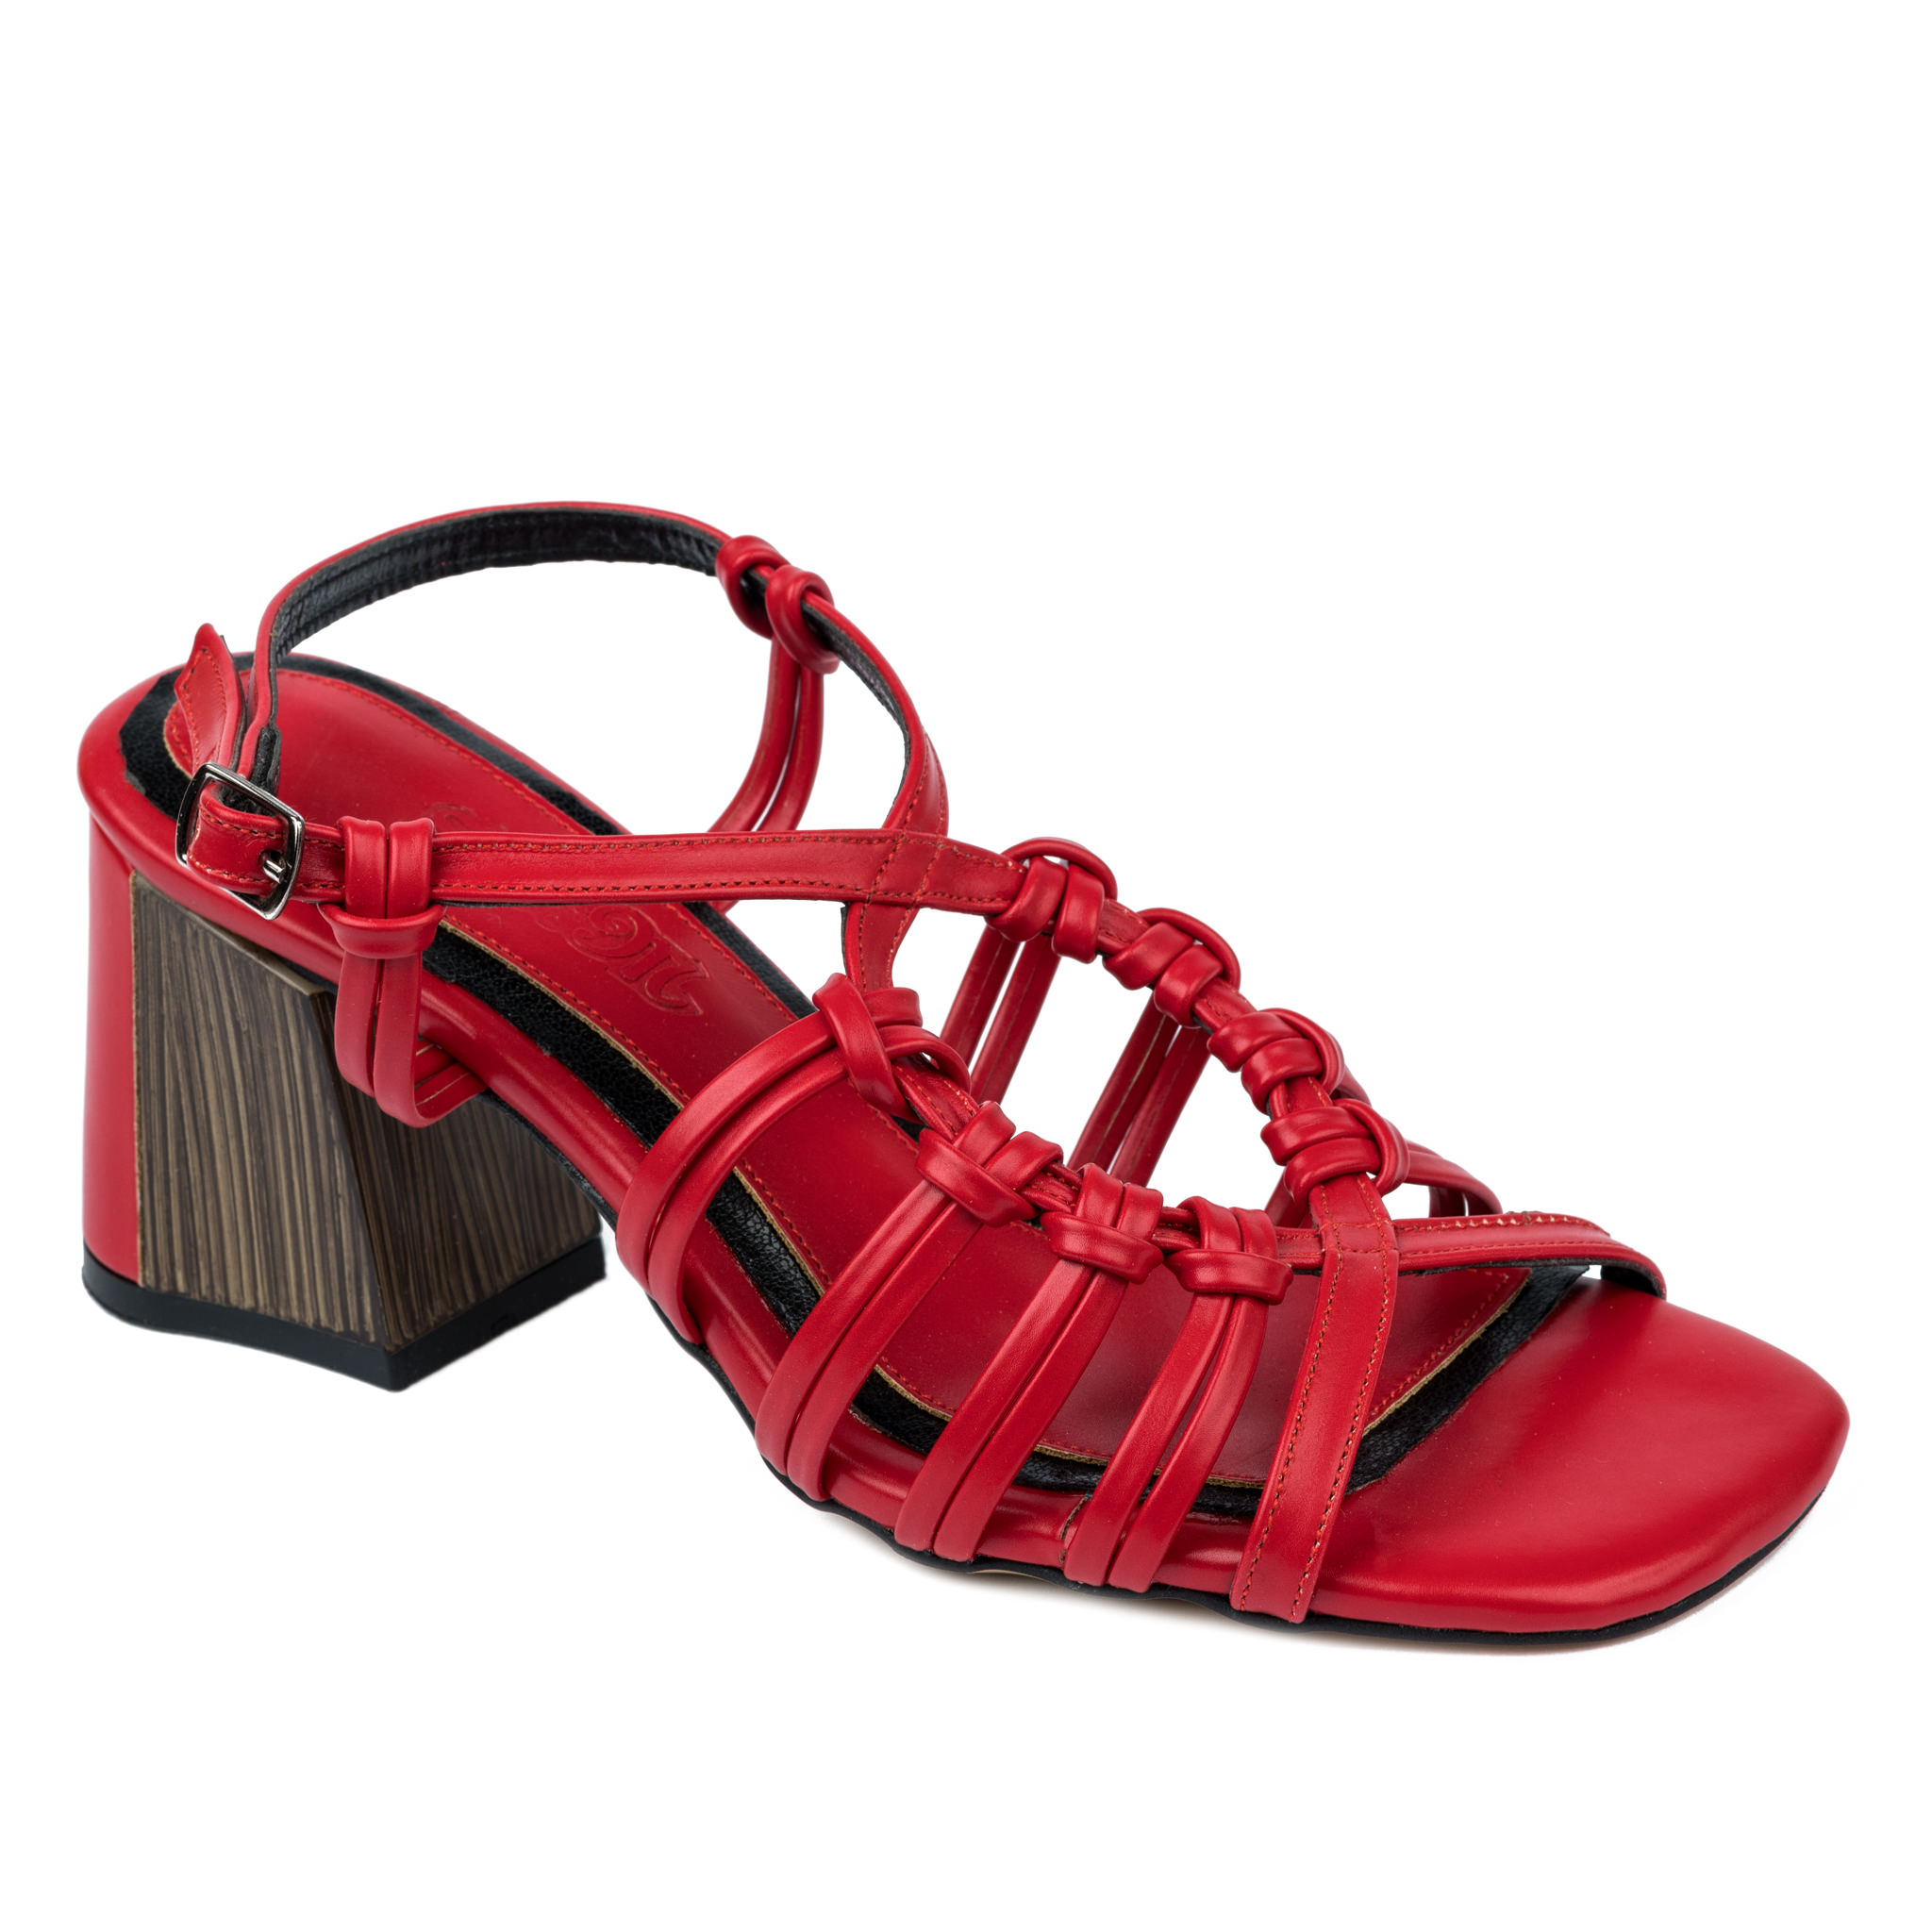 Women sandals A611 - RED